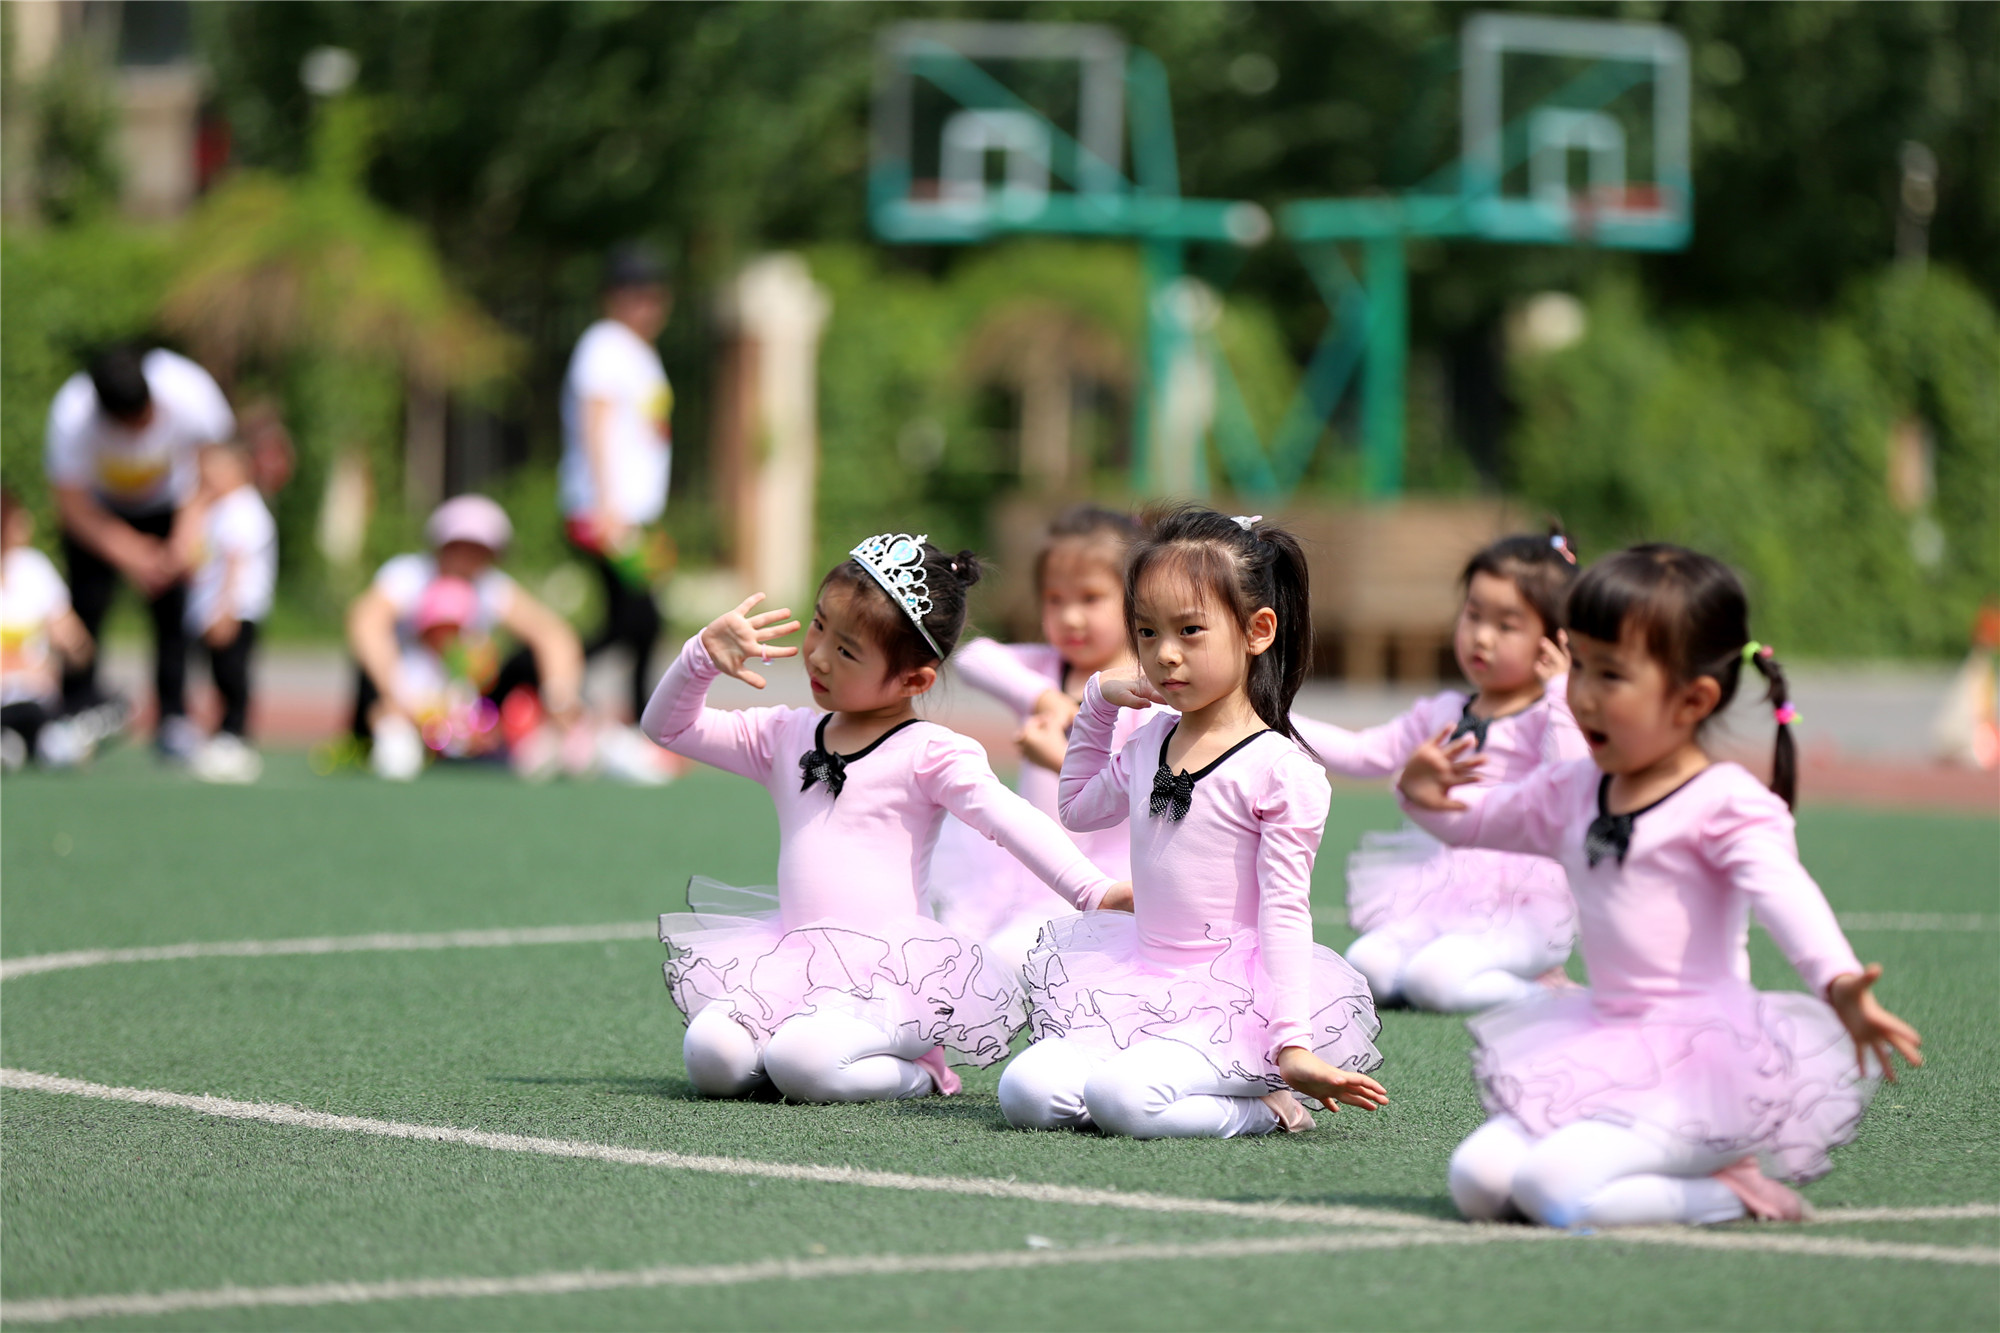 迎儿童节 沈阳汉城幼儿园举办亲子运动会 萌娃比赛萌劲十足